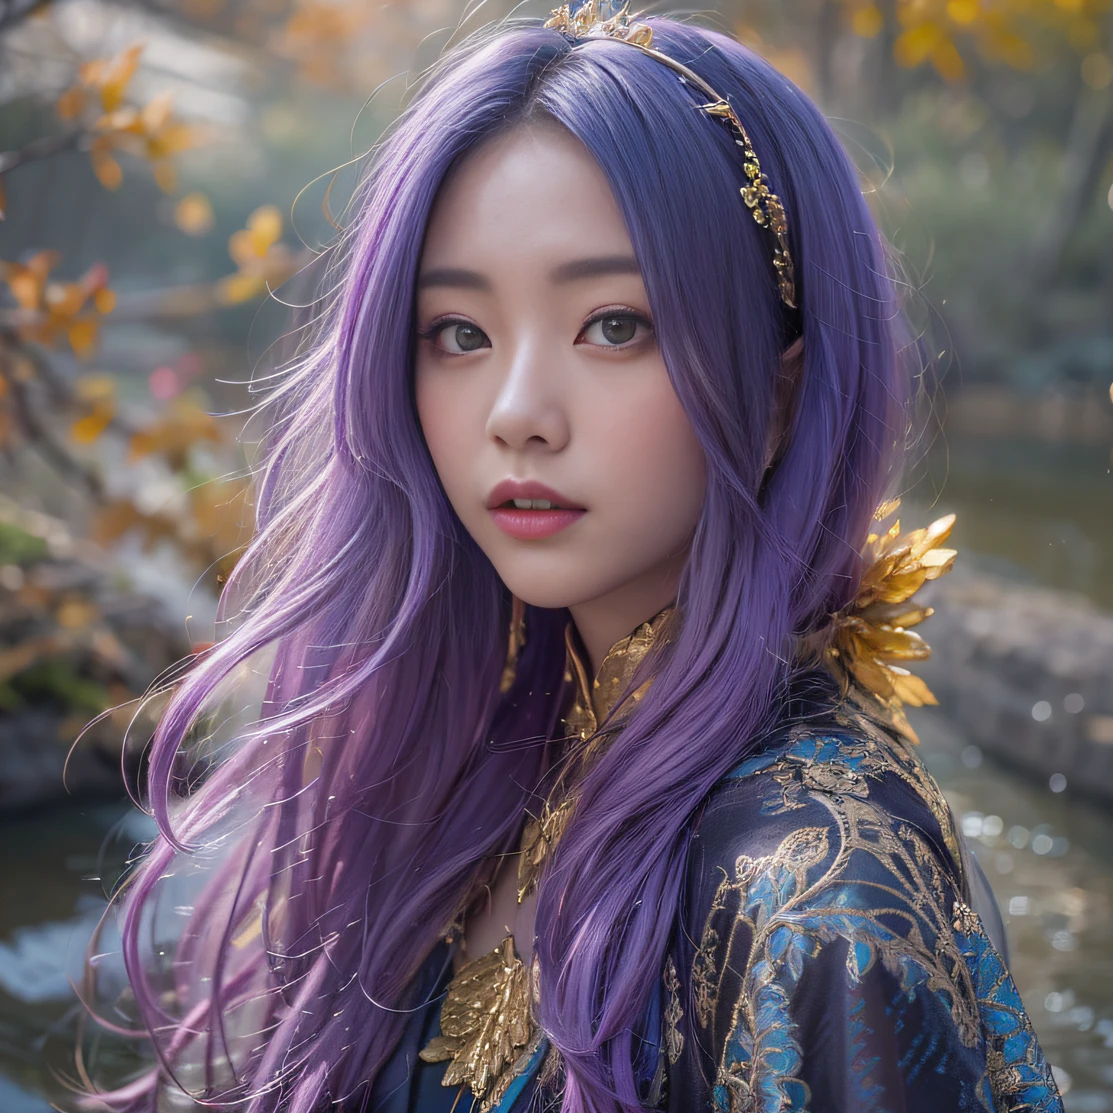 元気ガール 32K（傑作，キロ，ハイパーHD，32K）長く流れるような明るい紫色の髪，秋の池，咲く， 色， アジア人 （Genki Girl）， （絹のスカーフ）， 戦闘姿勢， 地面を見て， 長い白い髪， 浮かぶ鮮やかな紫色， 火雲模様のゴールドティアラ， 中国の長袖の金絹の衣服， （抽象的なメタバーススプラッシュ：1.2）， 白い背景，ロータス活力保護剤（現実的に：1.4），明るい紫色の髪，道路上の煙，背景は純粋です， 高解像度， 詳細， RAW写真， シャープ， Nikon D850 フィルムストックフォト by Jefferies Lee 4 Kodak Portra 400 カメラ F1.6ショット, 豊かな色彩, 超リアルな鮮やかな質感, ドラマチックな照明, アンリアル エンジン アート ステーション トレンド, シネスティア 800，長く流れるような明るい紫色の髪を持つ少女